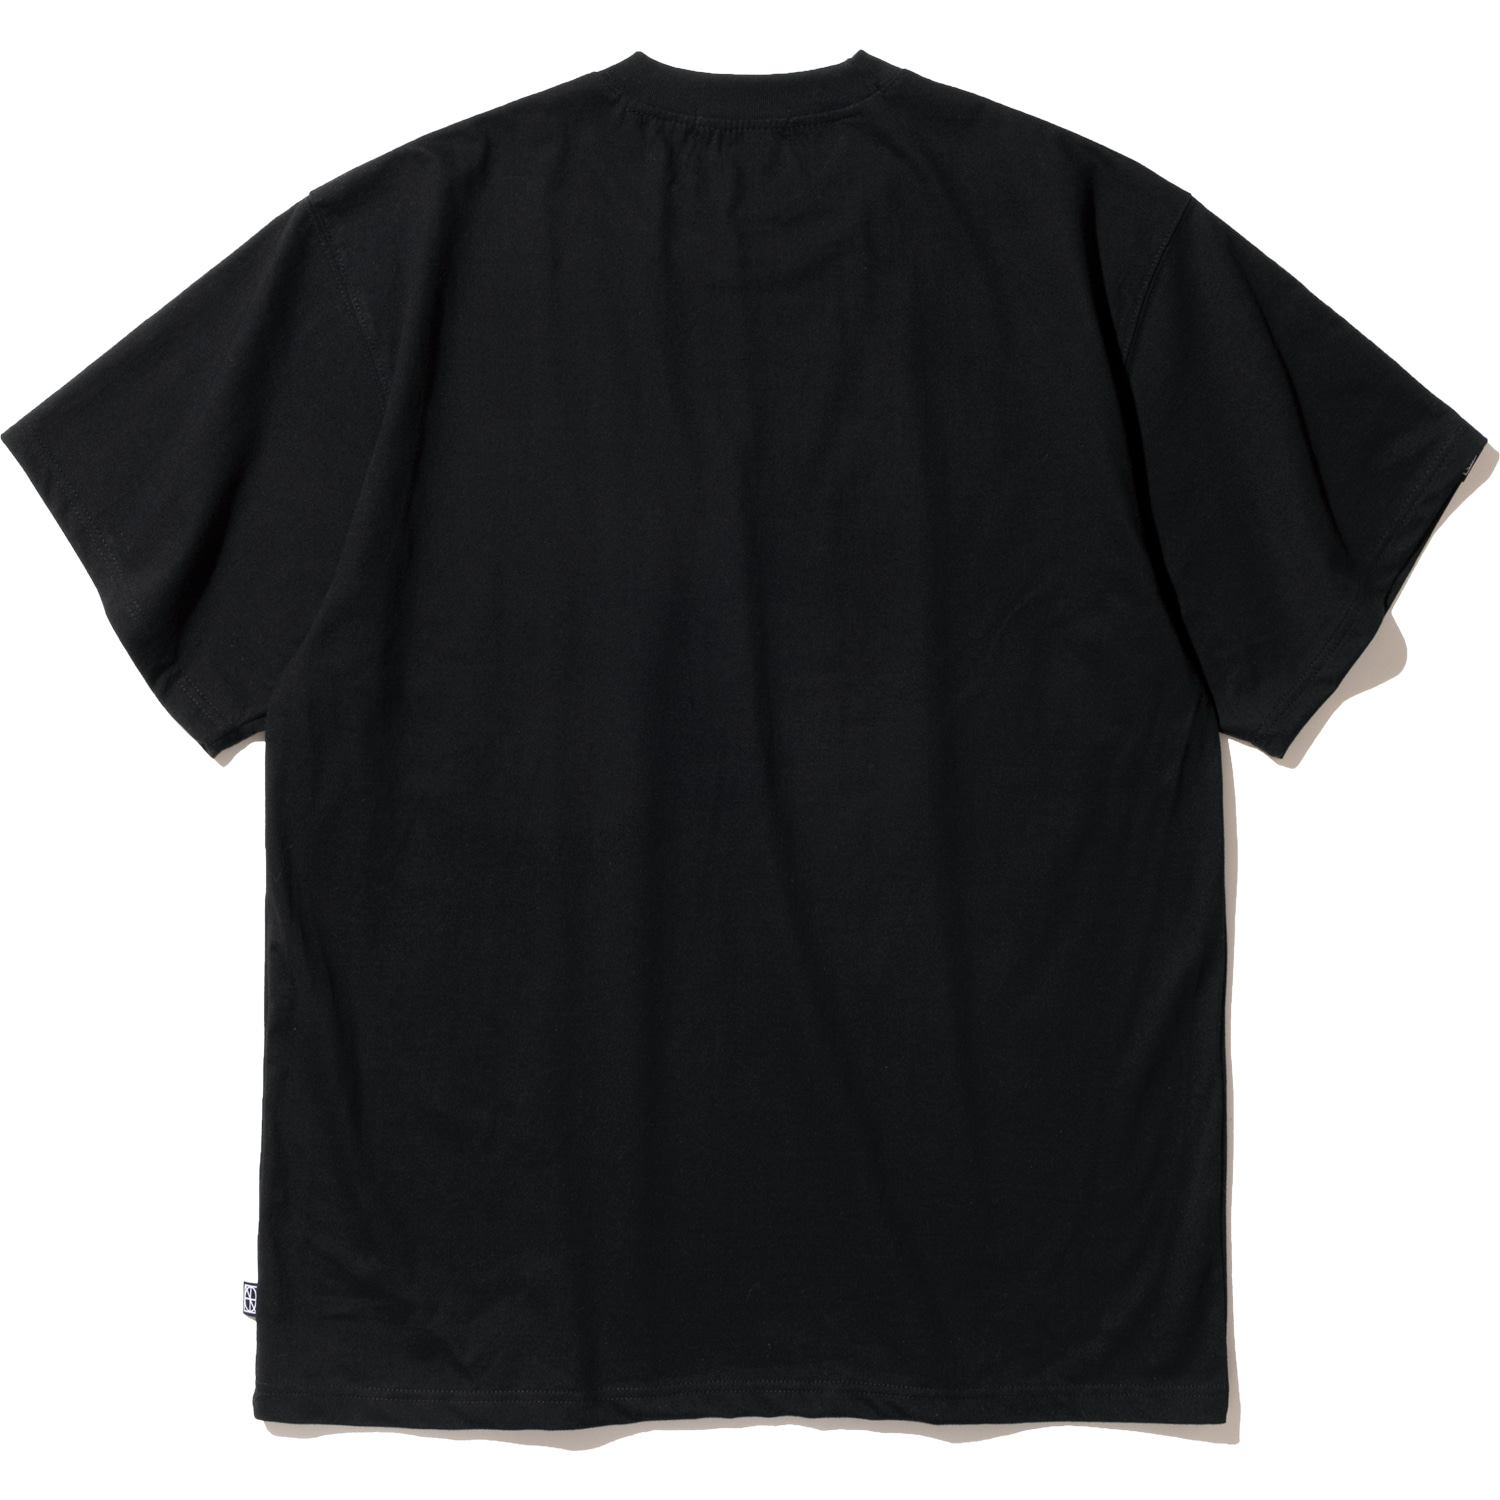 Metal Logo T-Shirts - Black,NOT4NERD